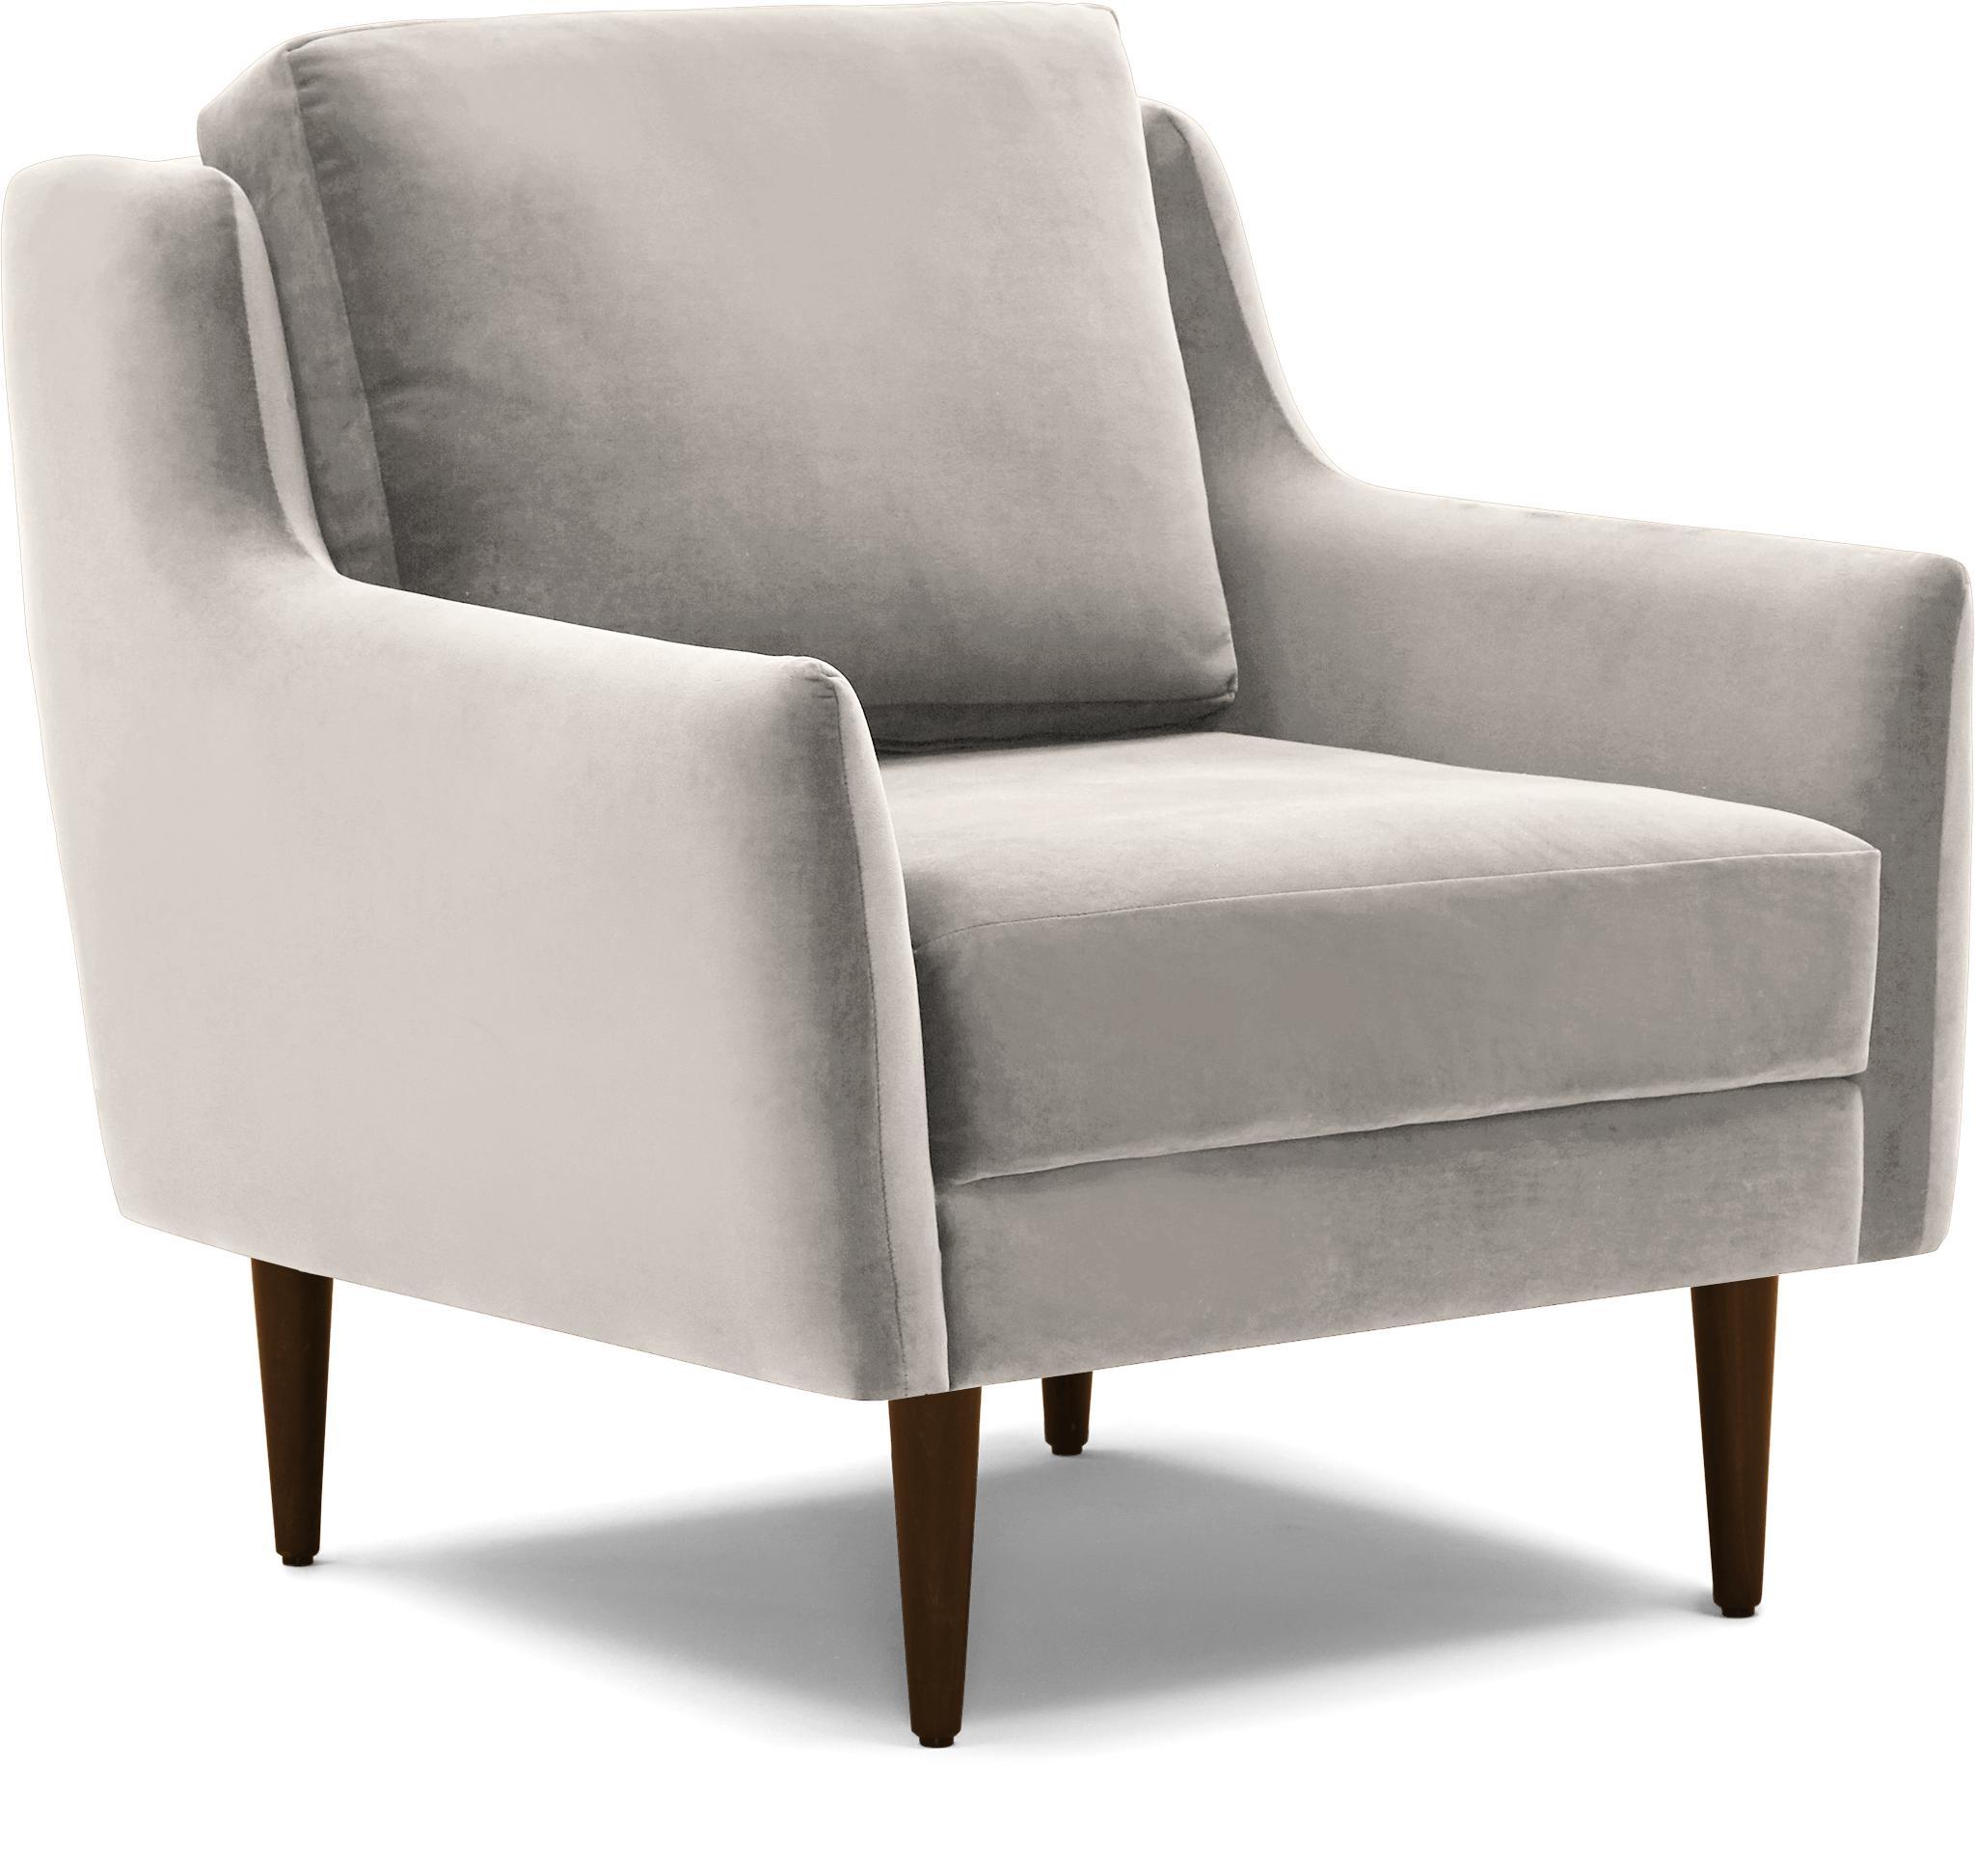 Beige/White Bell Mid Century Modern Chair - Merit Dove - Mocha - Image 1